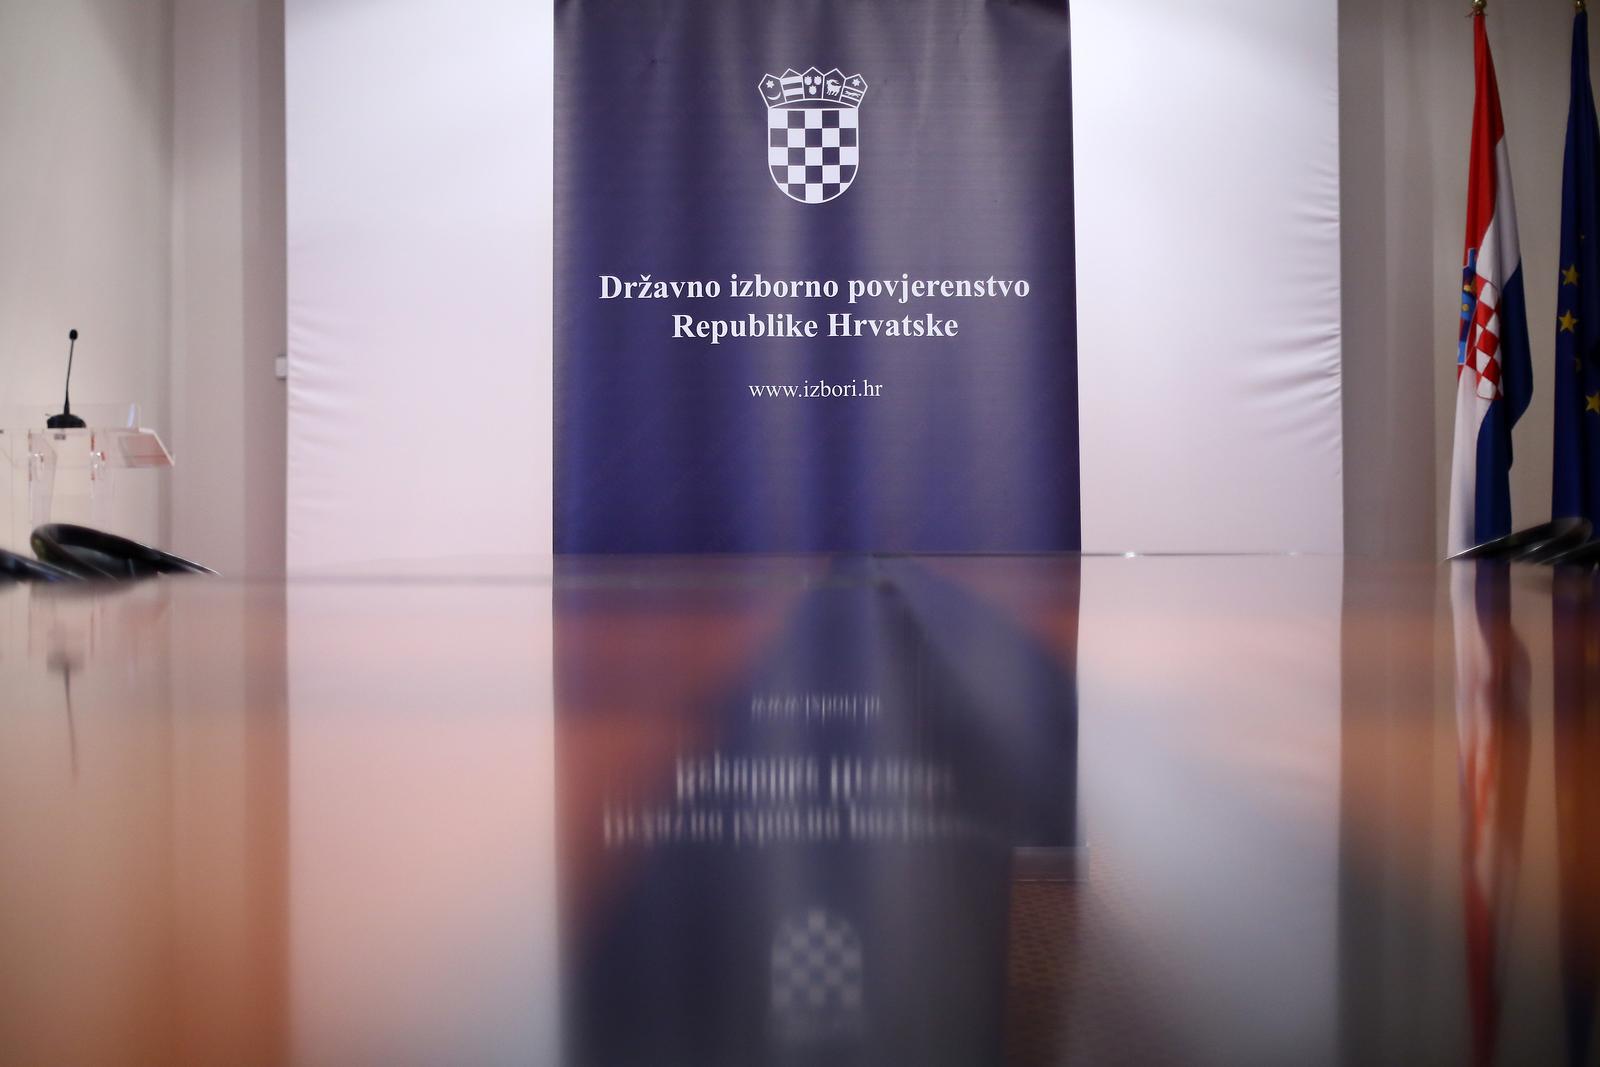 26.05.2019., Zagreb - U 23 sata, Drzavno izborno povjernstvo objavilo je prve nesluzbene rezultate Europskih izbora. rPhoto: Borna Filic/PIXSELL